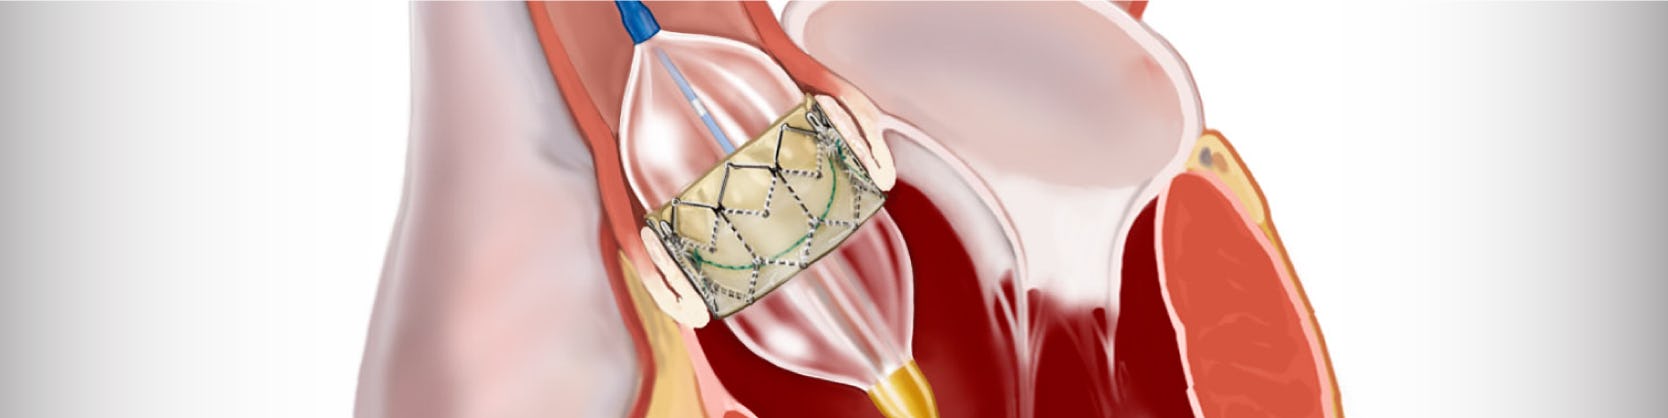 Tratament stenoza aortica – TAVI | ARES